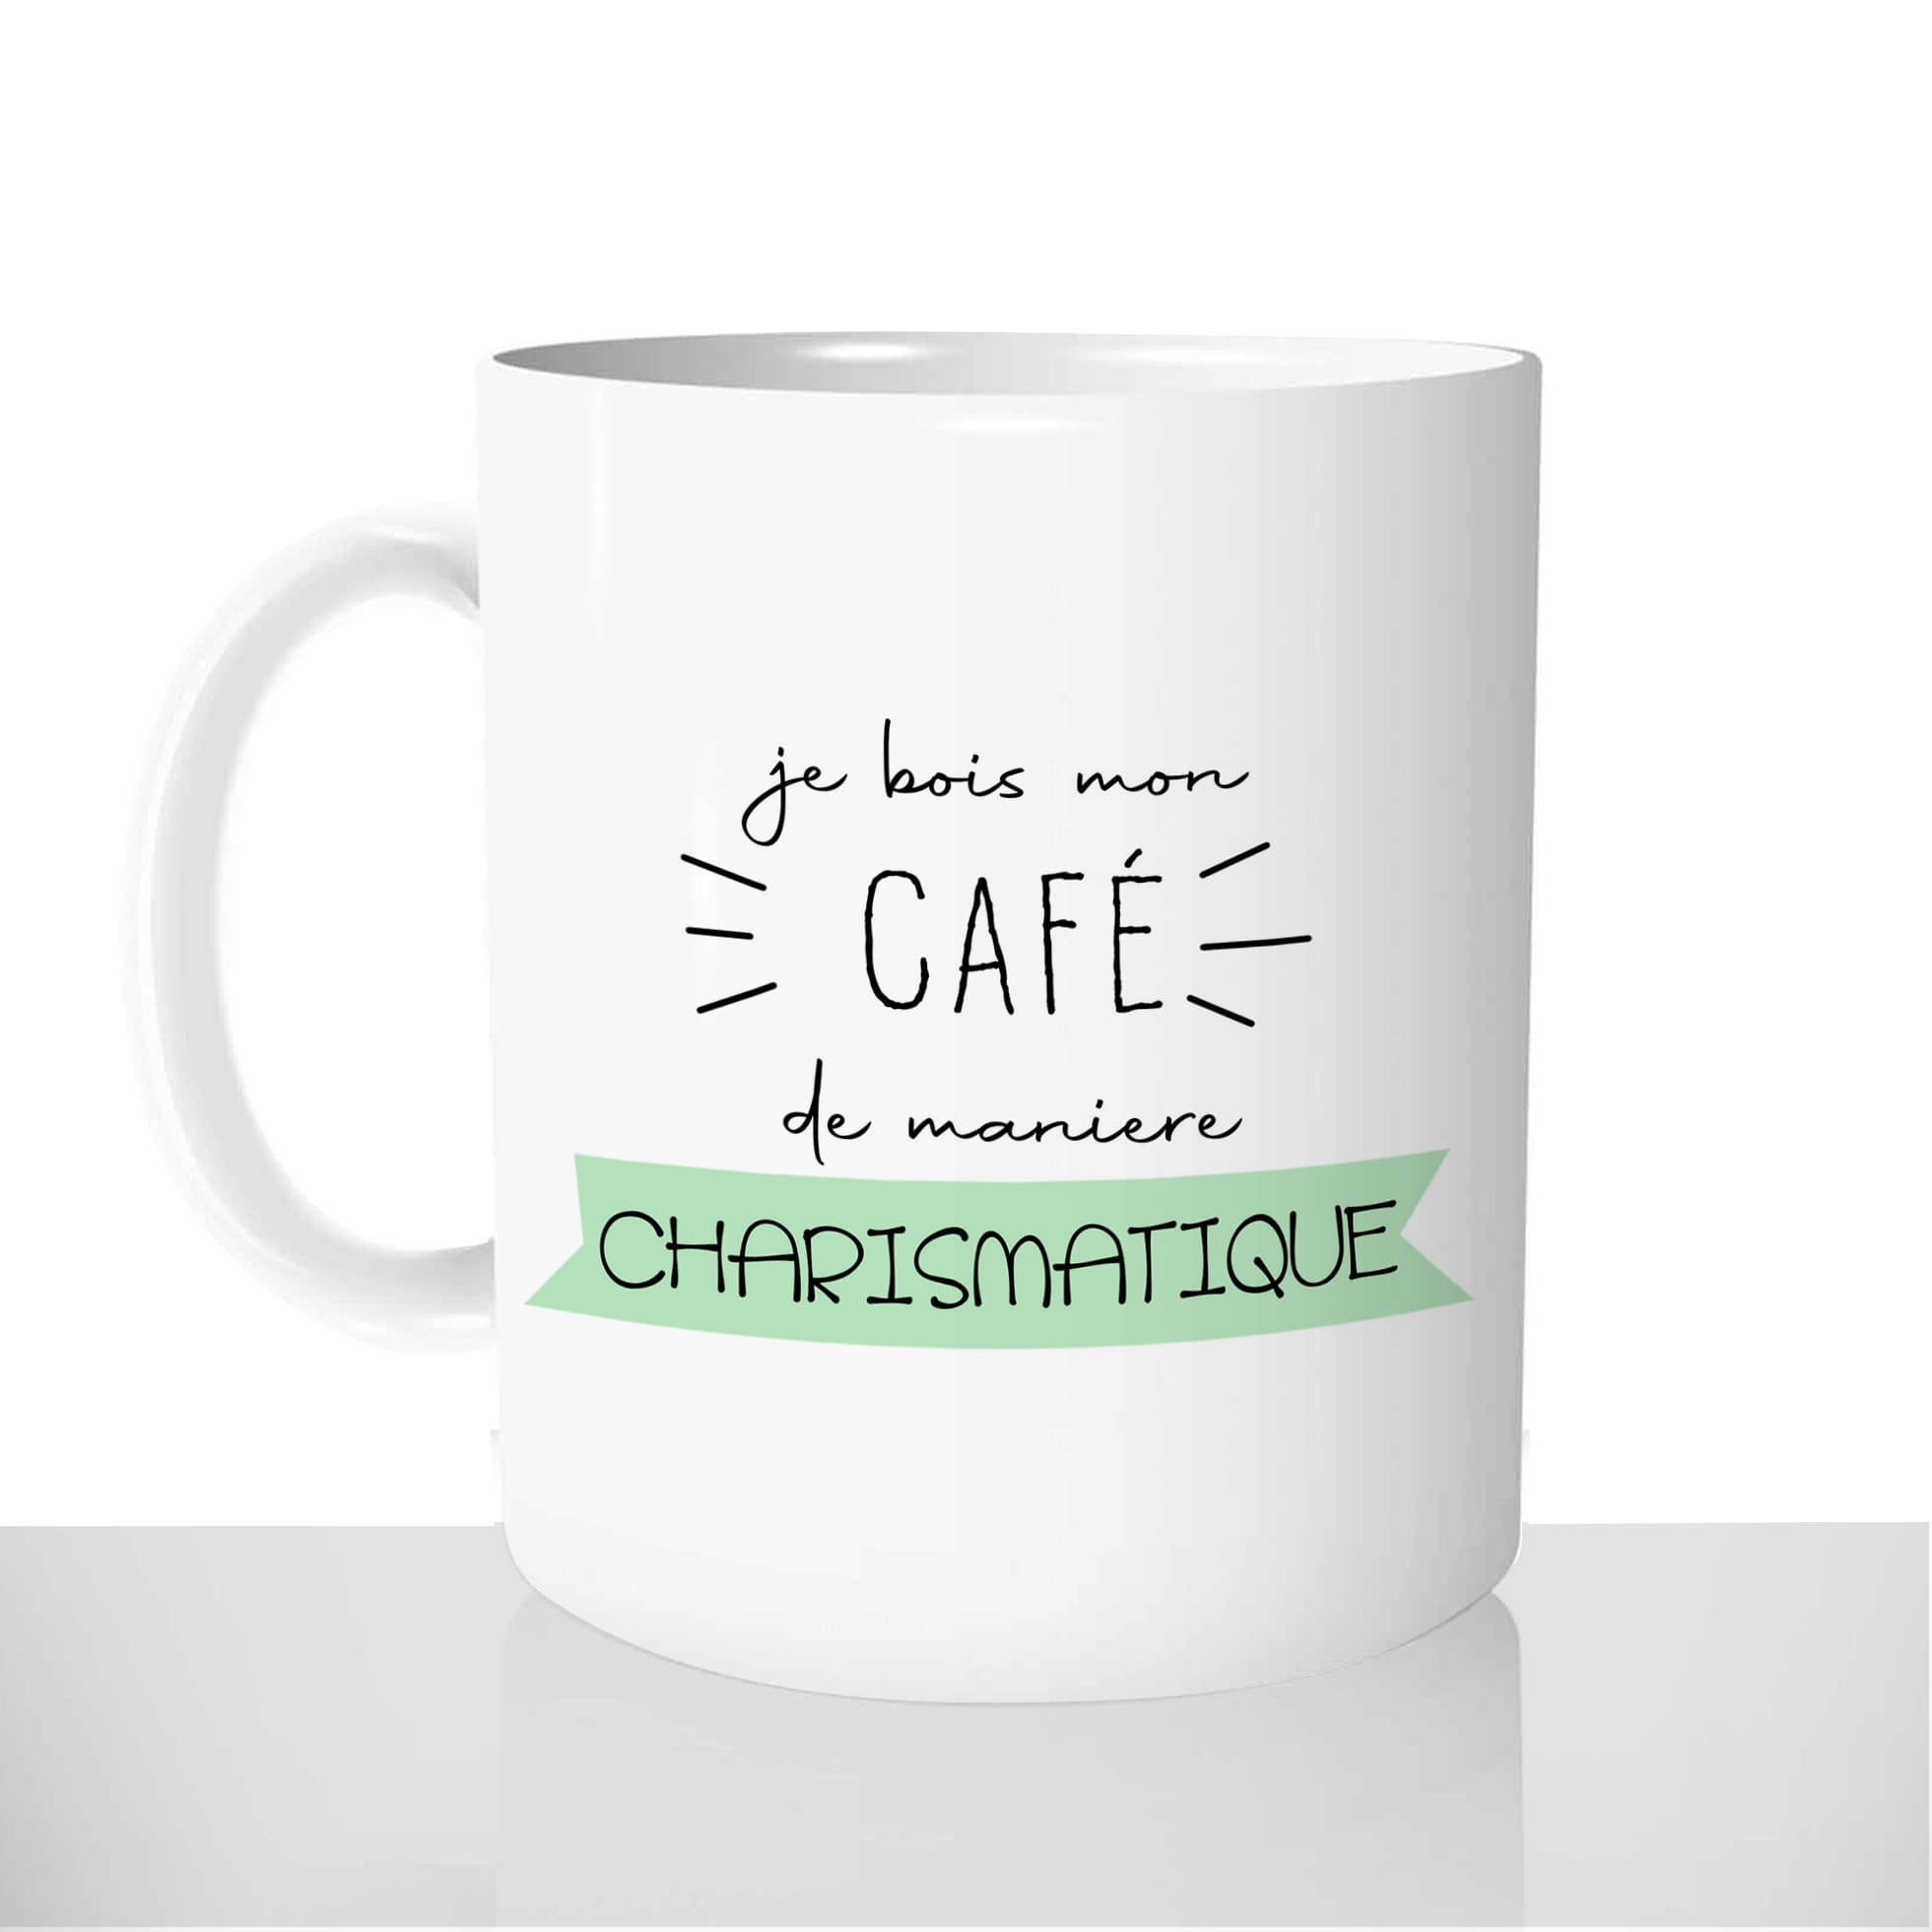 mug-blanc-céramique-11oz-france-mugs-surprise-pas-cher-je-bois-mon-café-de-maniere-charismatique-charisme-fun